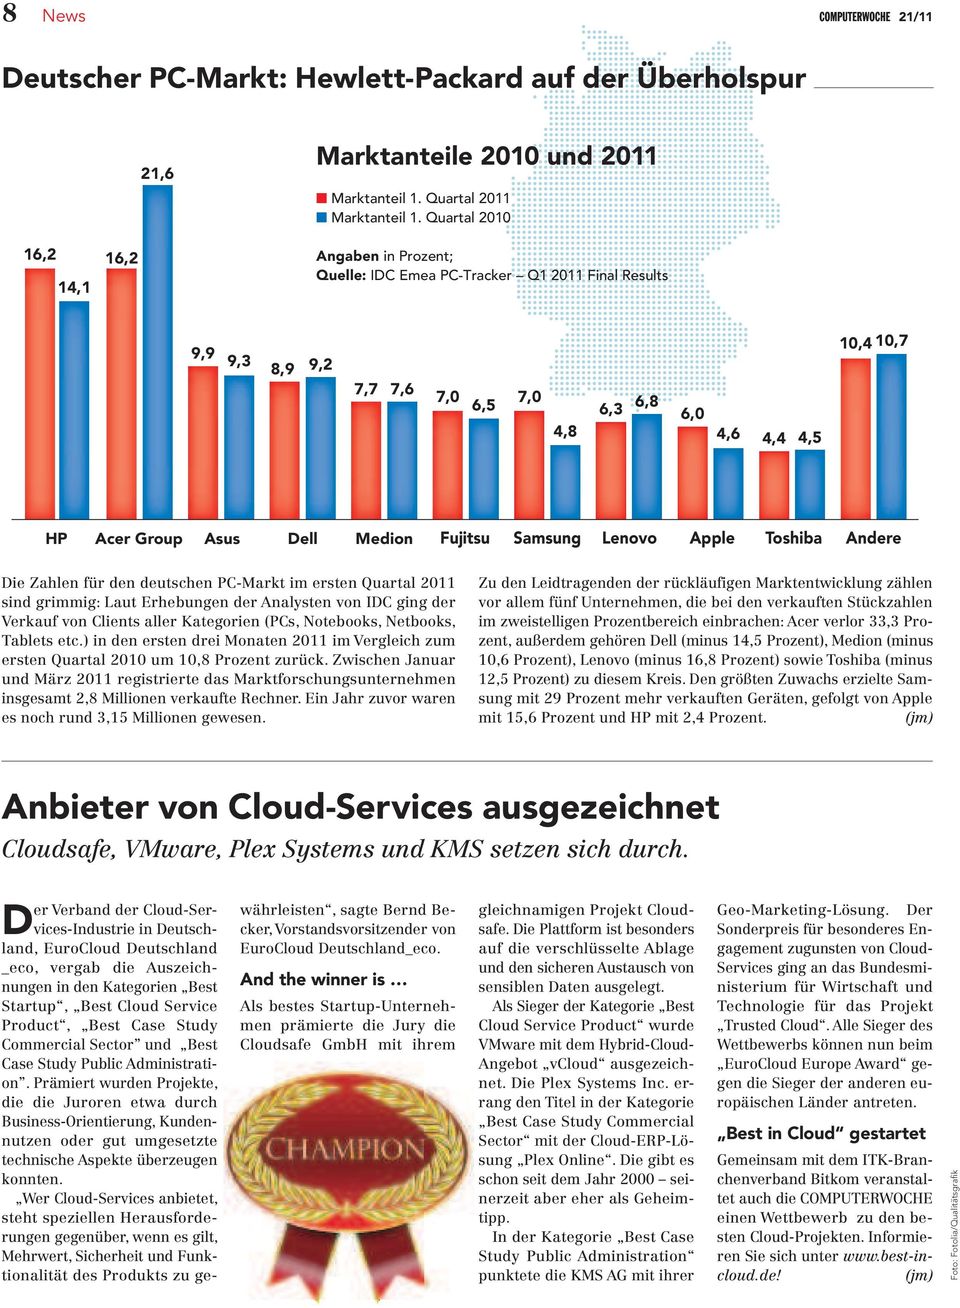 Medion Fujitsu Samsung Lenovo Apple Toshiba Andere Die Zahlen für den deutschen PC-Markt im ersten Quartal 2011 sind grimmig: Laut Erhebungen der Analysten von IDC ging der Verkauf von Clients aller